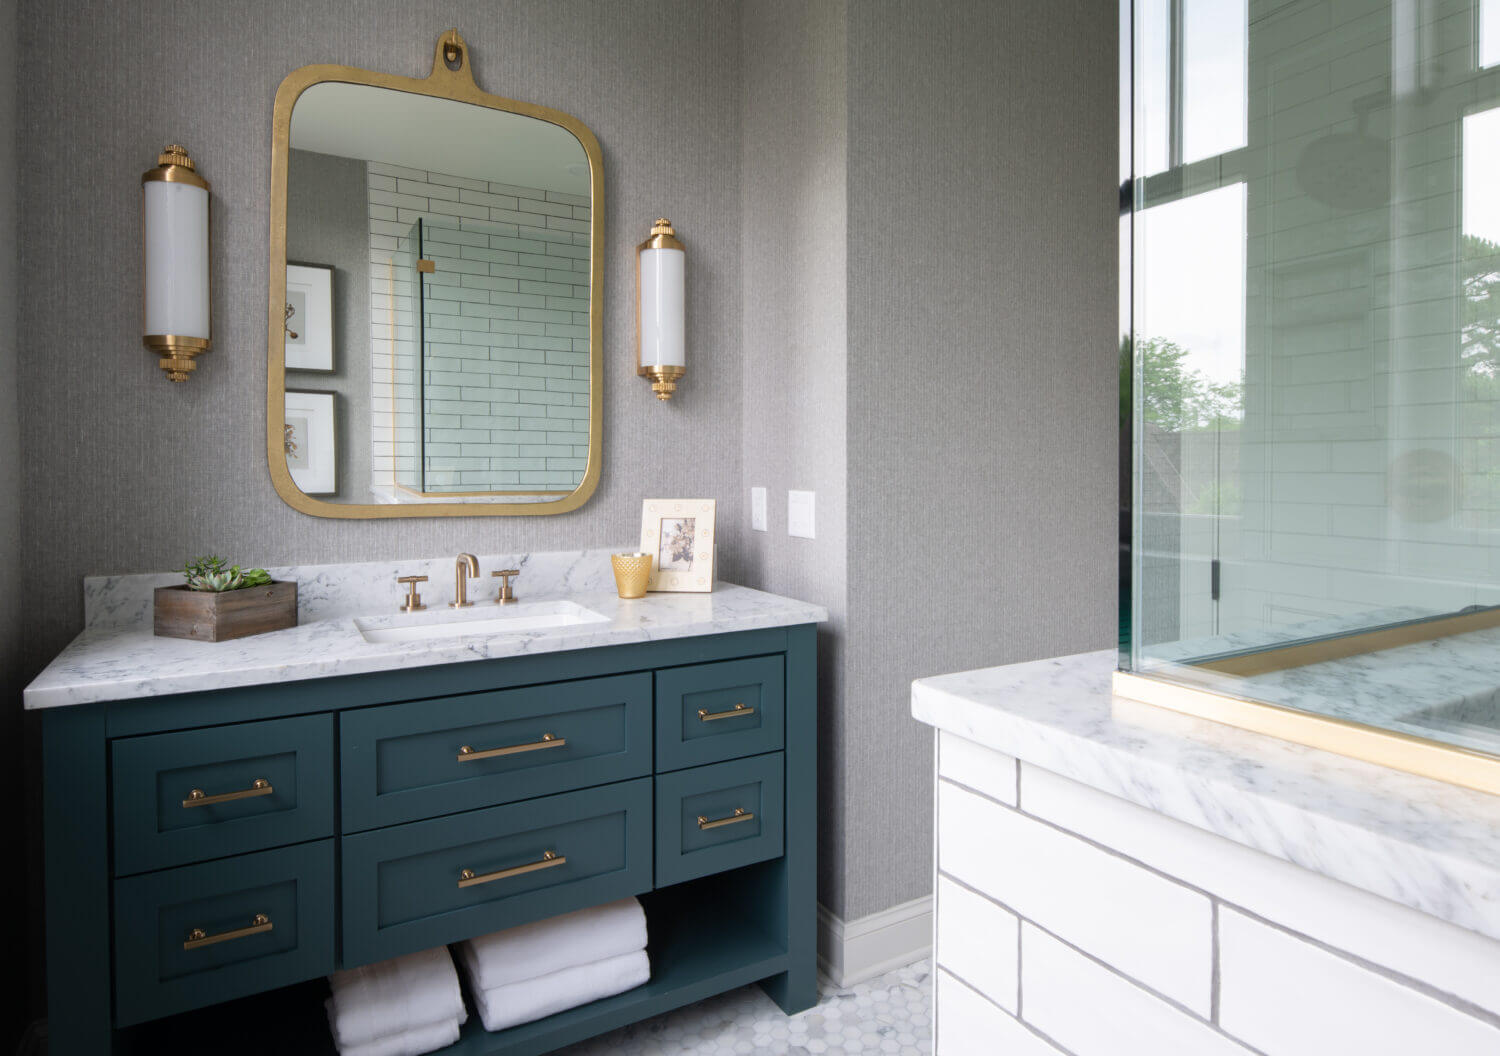 Teal Bathroom Vanity : Fresh Coastal Bathroom Remodel White Bathroom